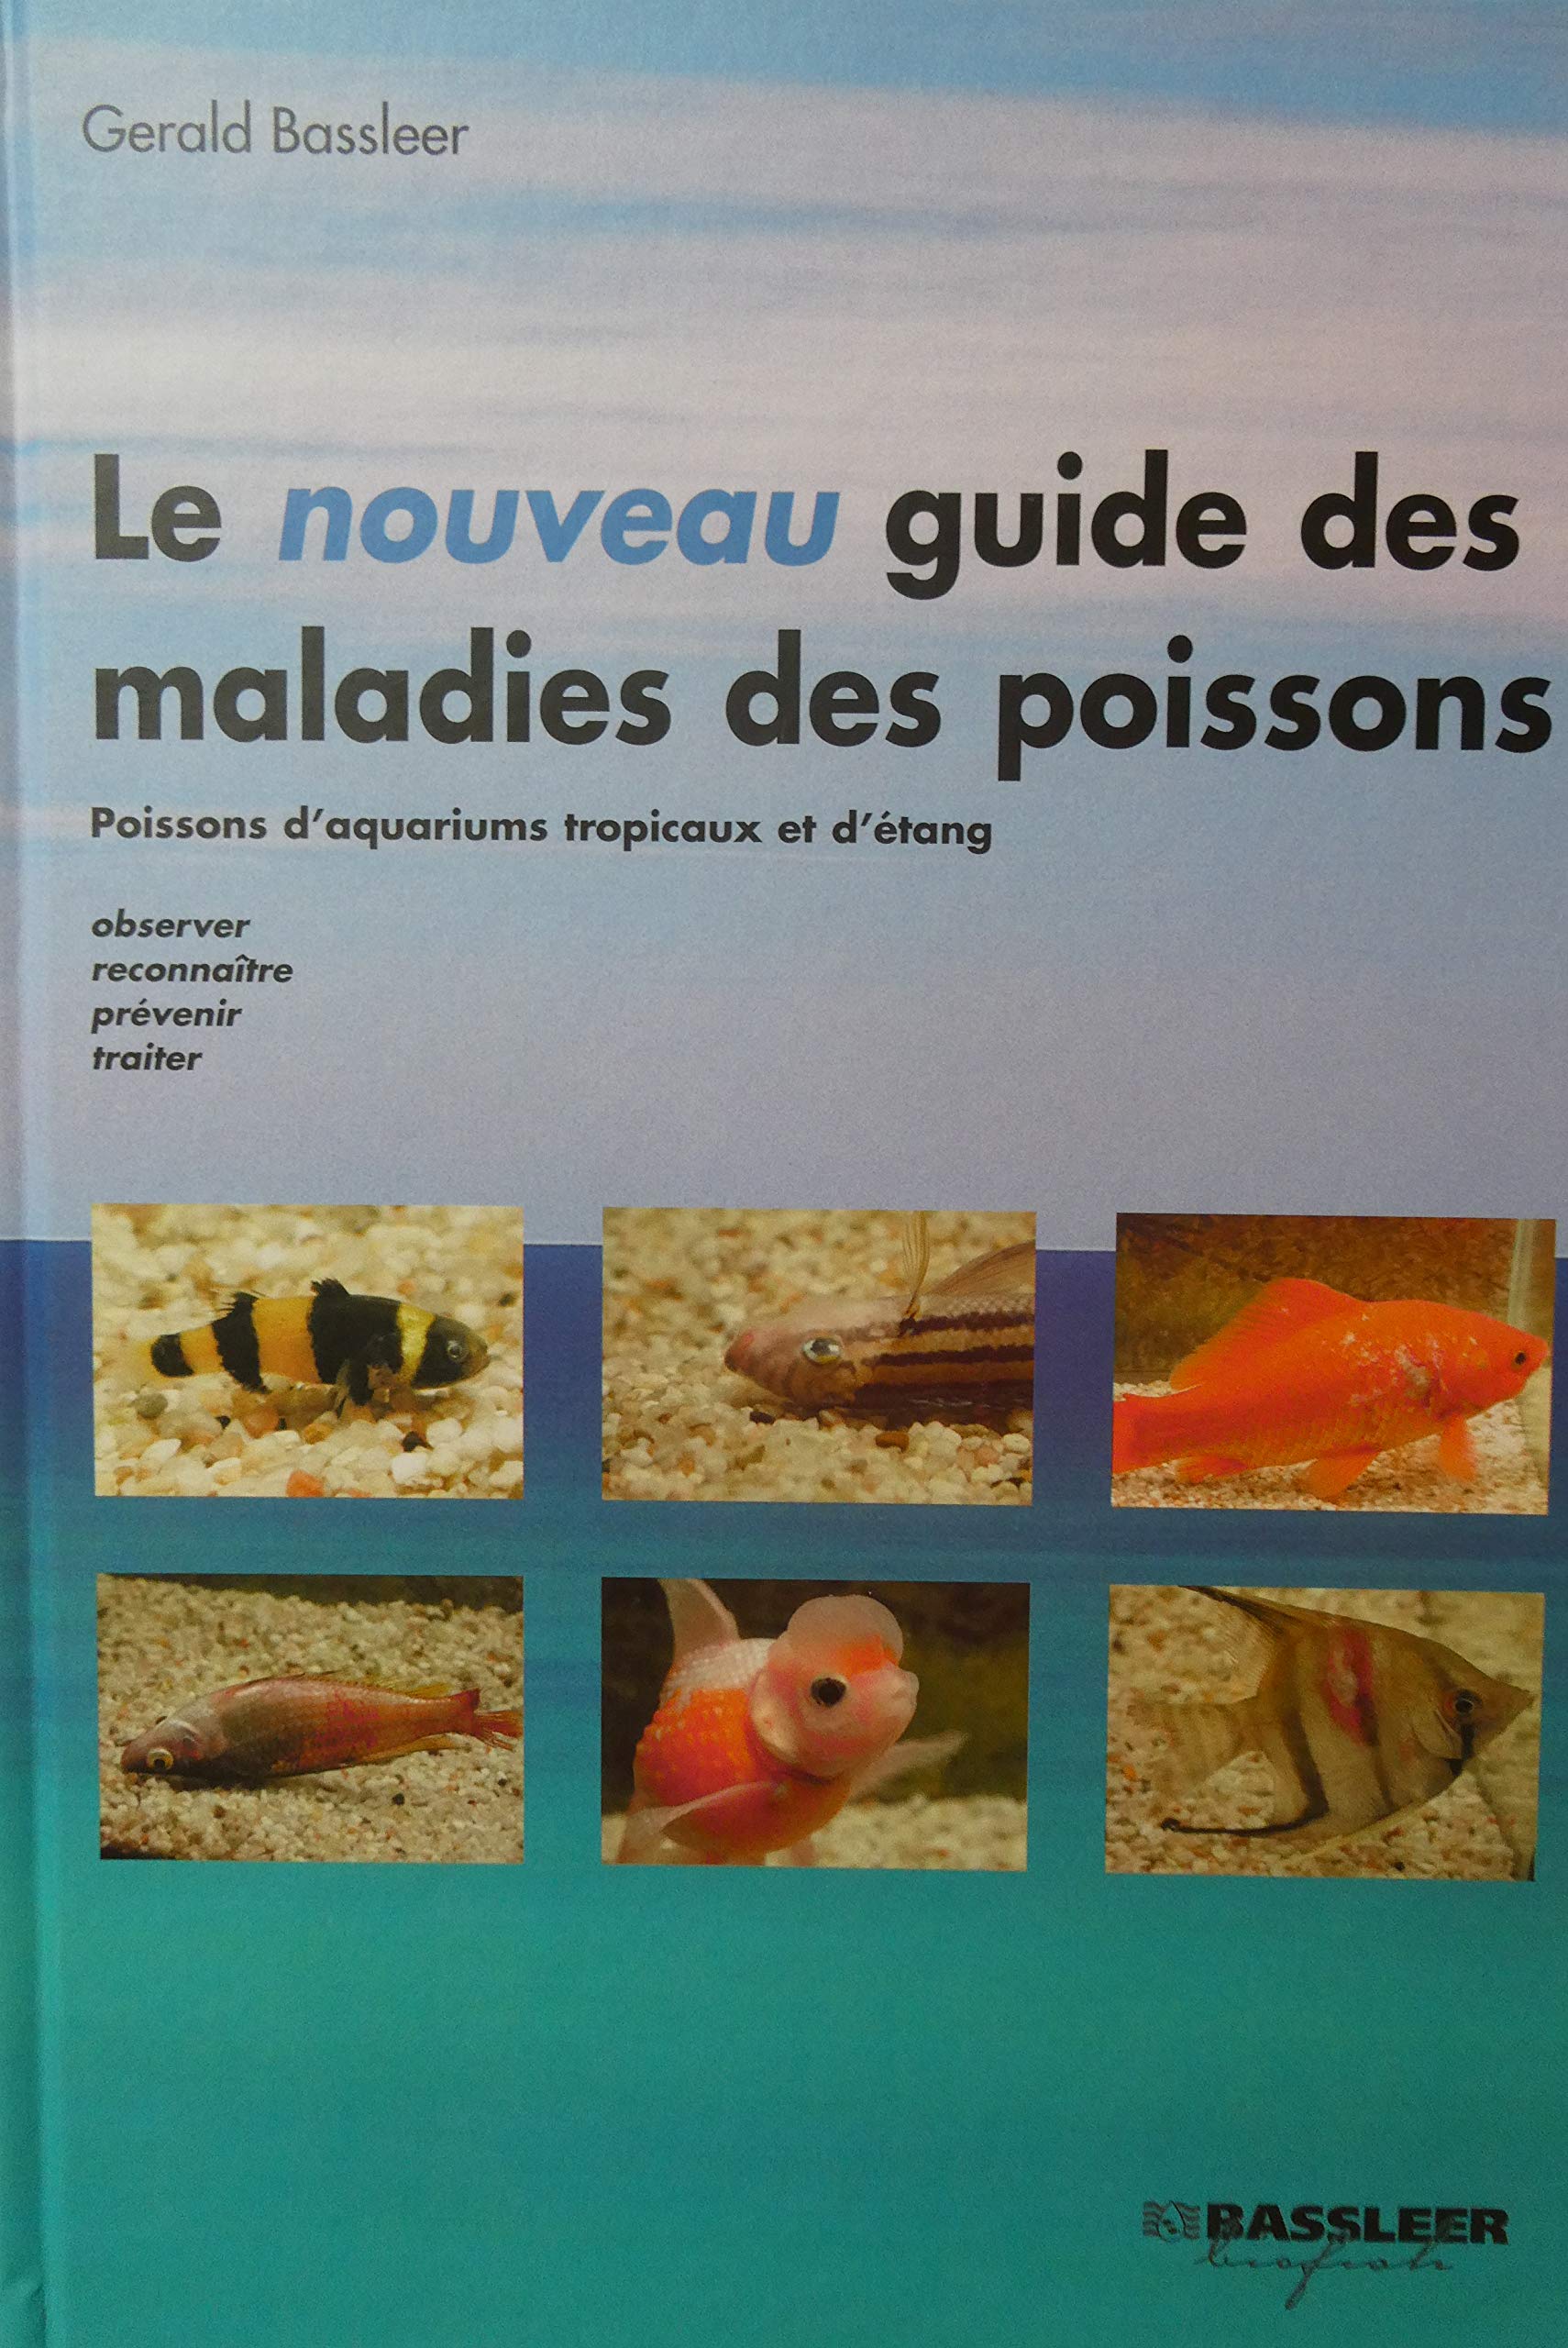 Le nouveau guide des maladies des poissons